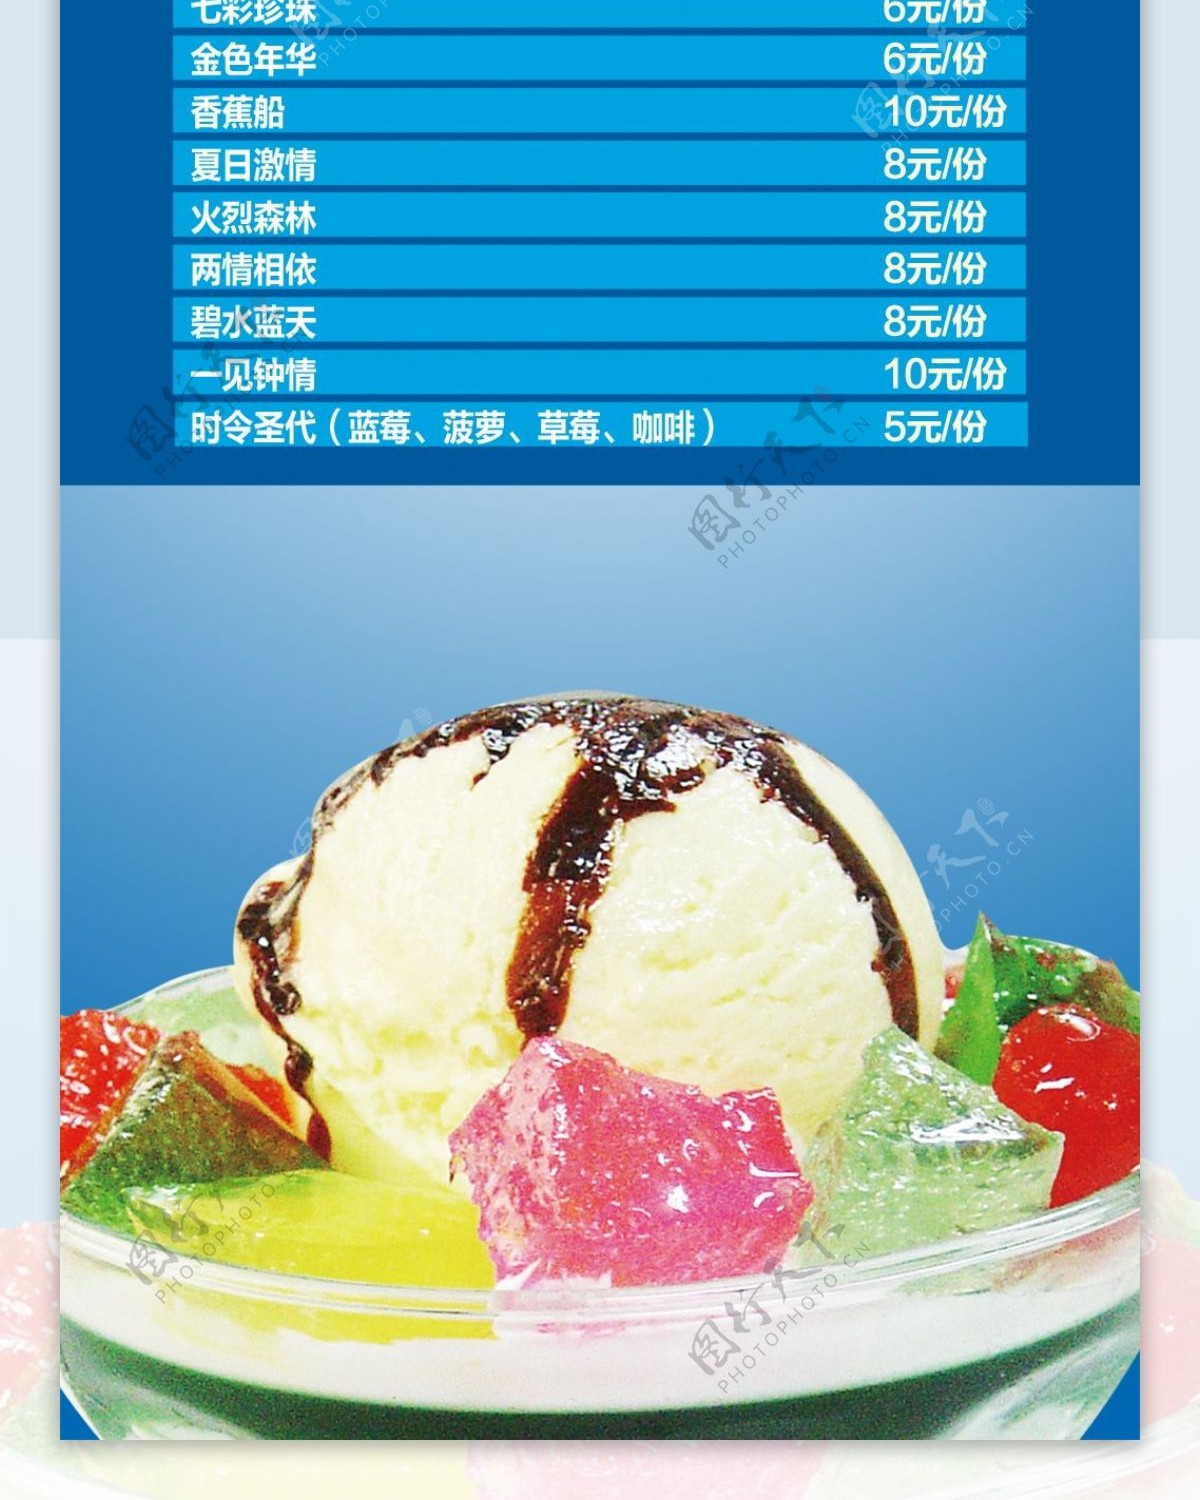 精美冰淇淋展架设计模板素材画面